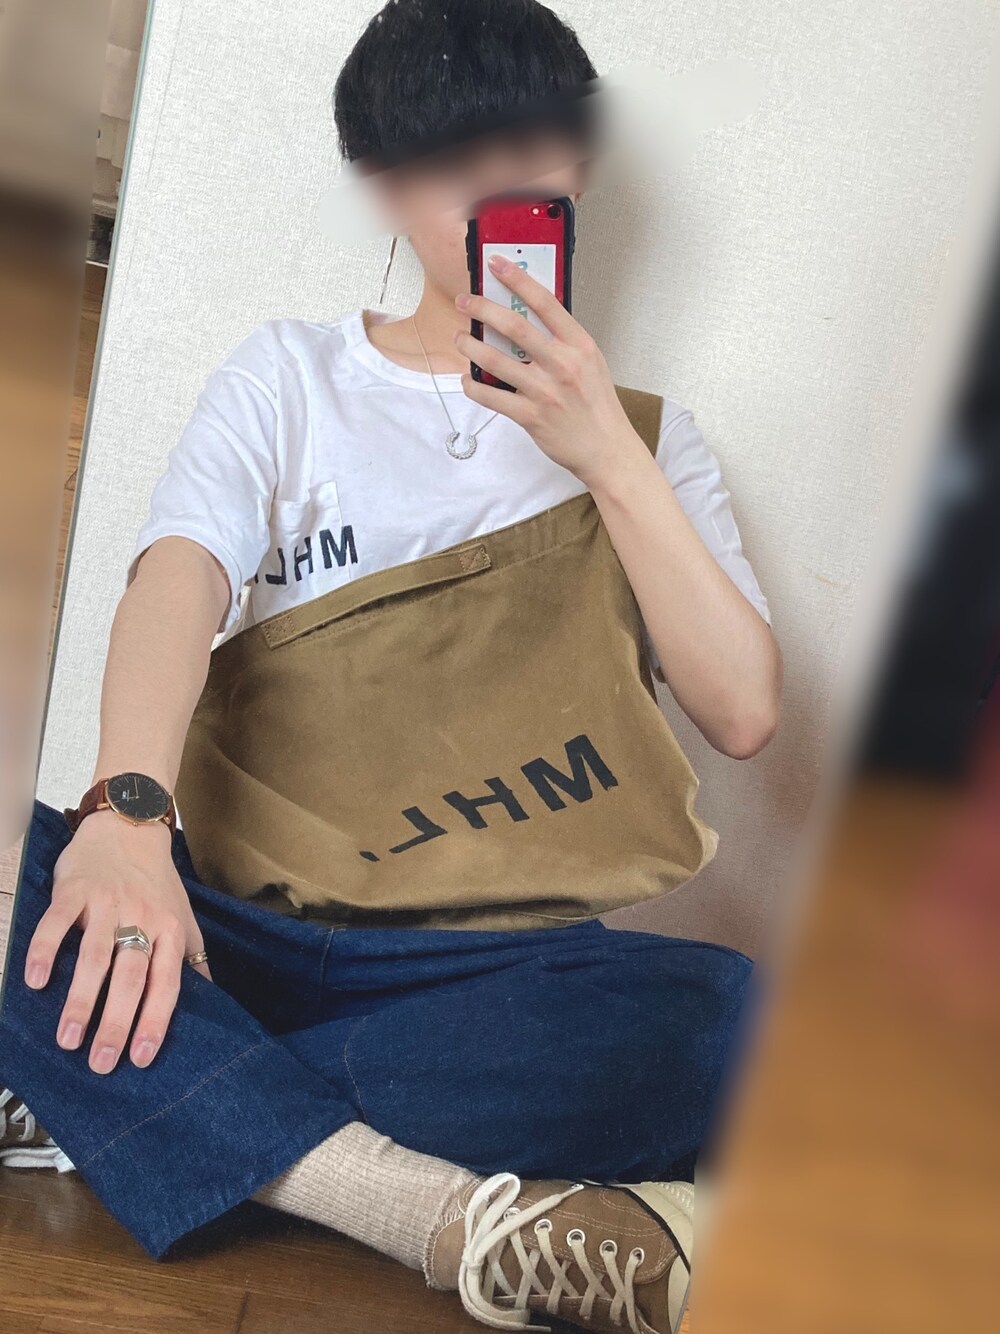 別注ロゴTシャツ／MHL.